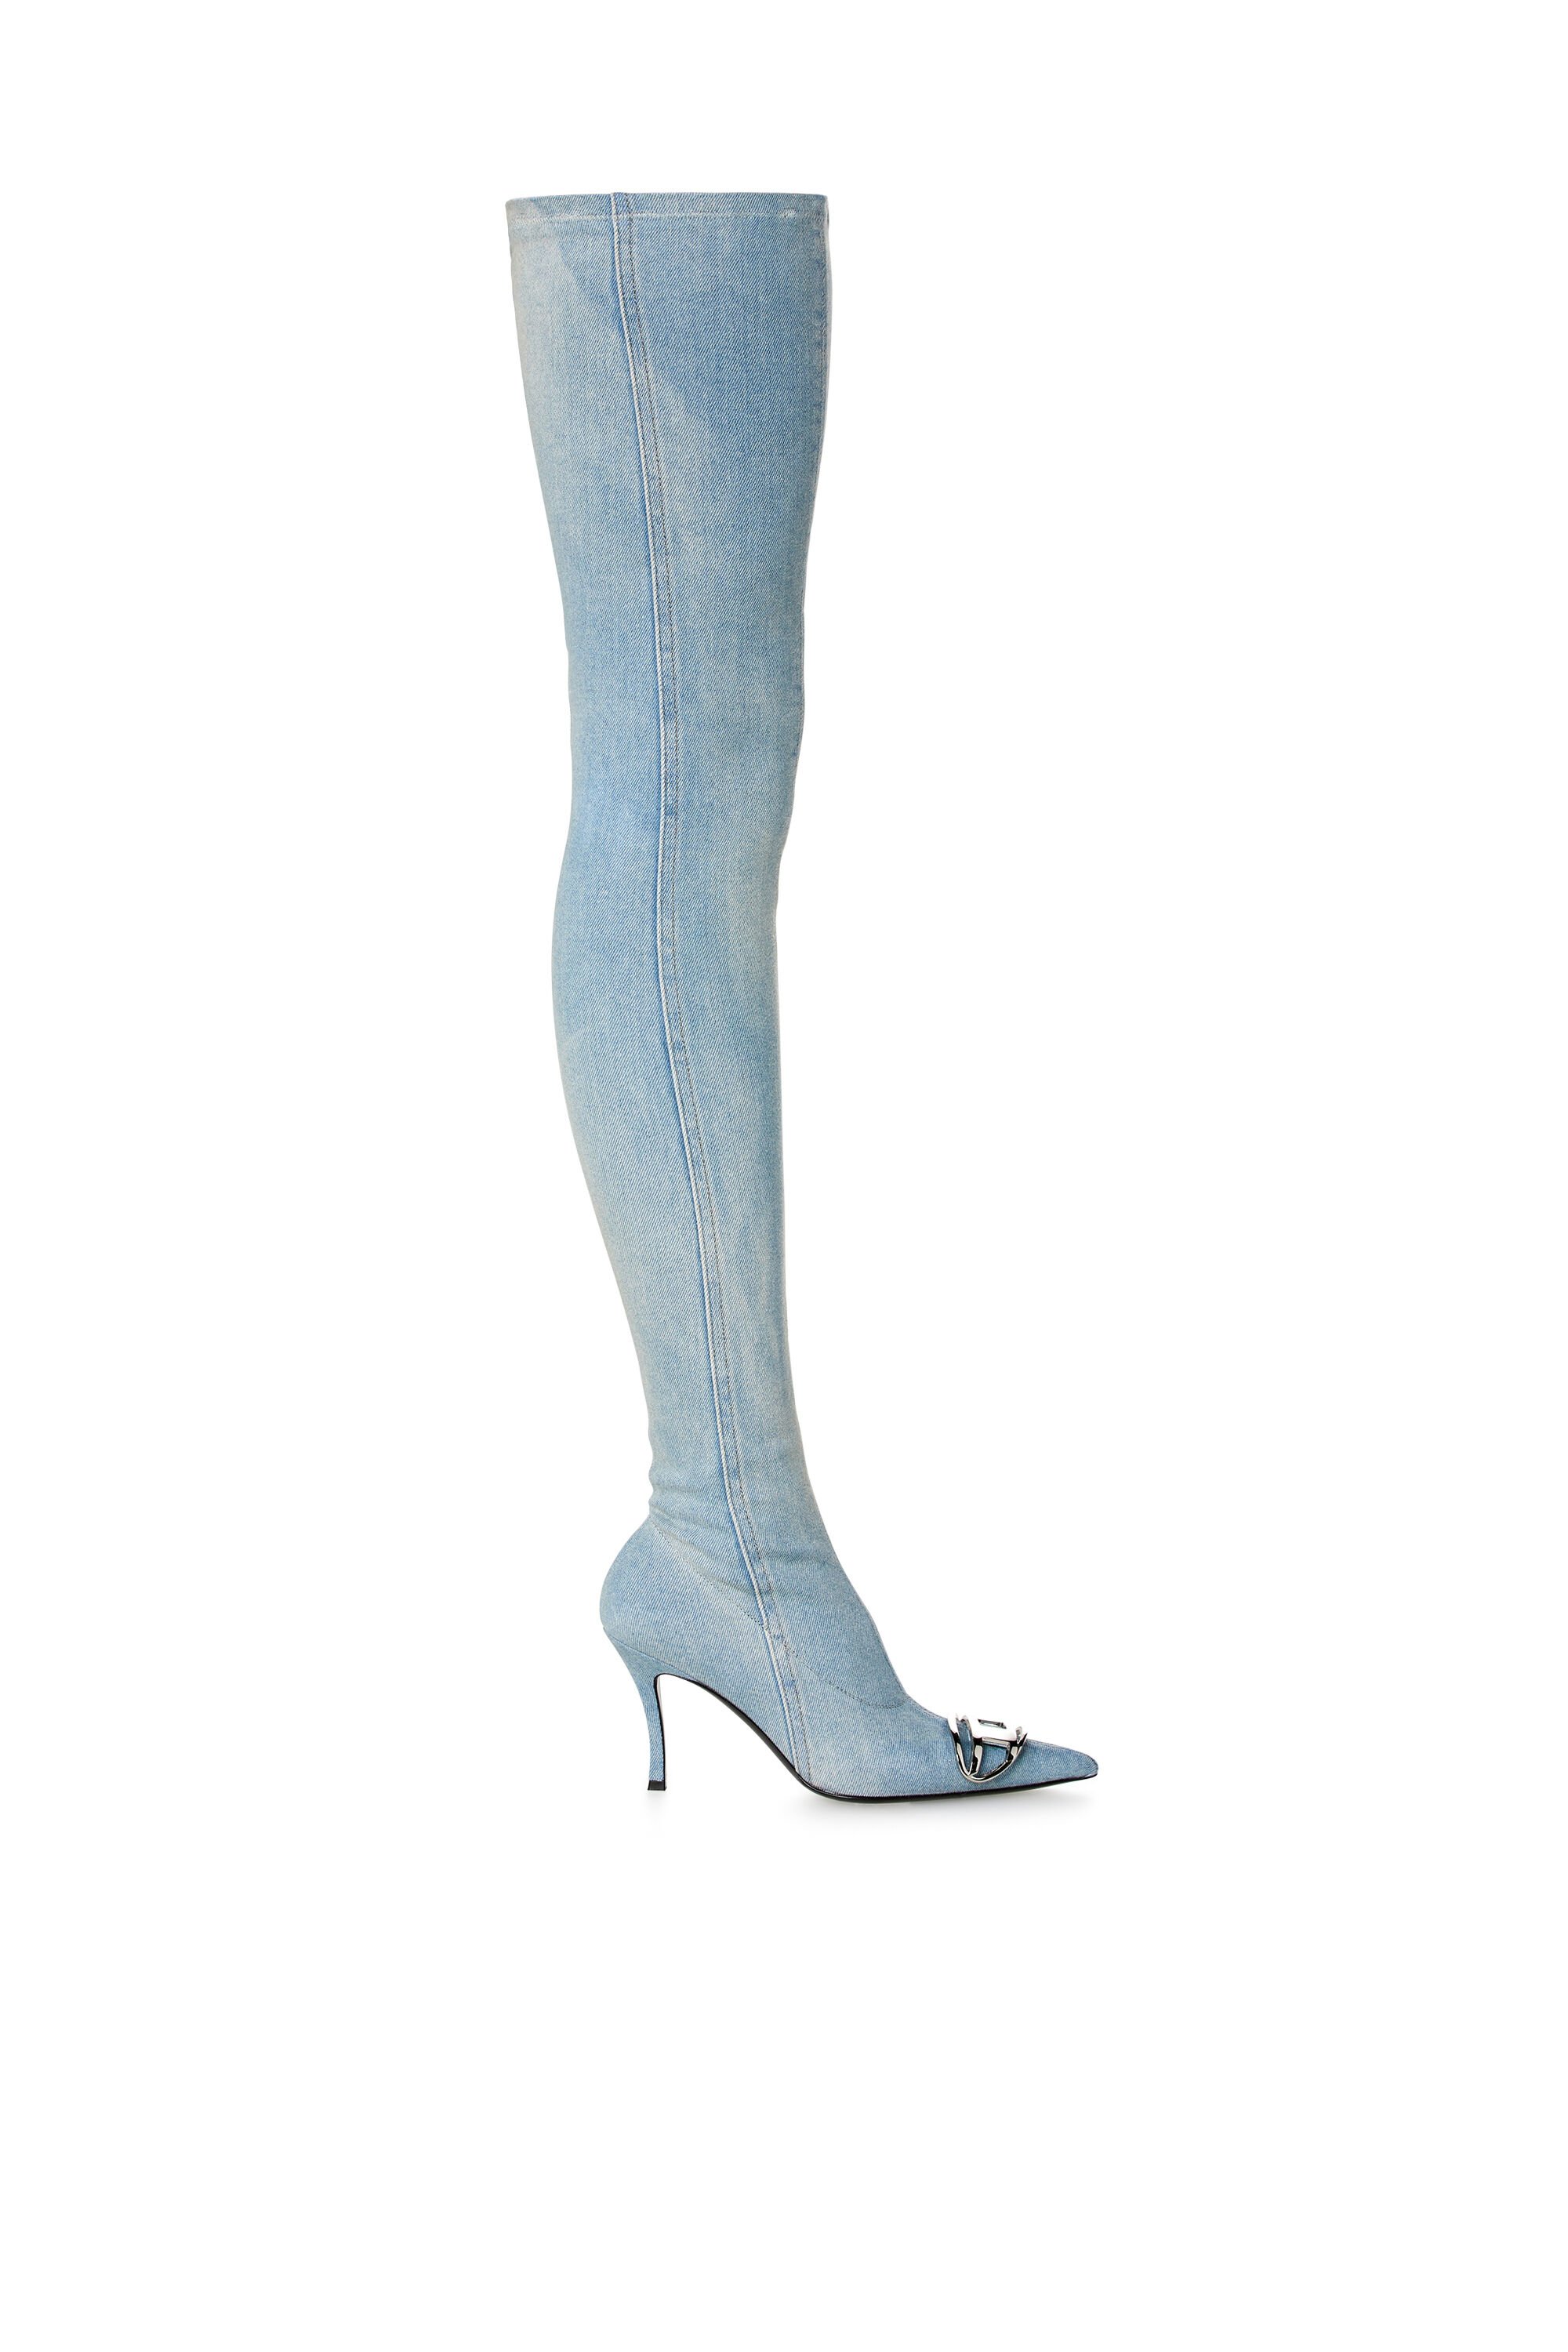 Diesel - D-VENUS TBT D, Damen D-Venus-Overknee-Stiefel aus verblasstem Denim in Blau - Image 1